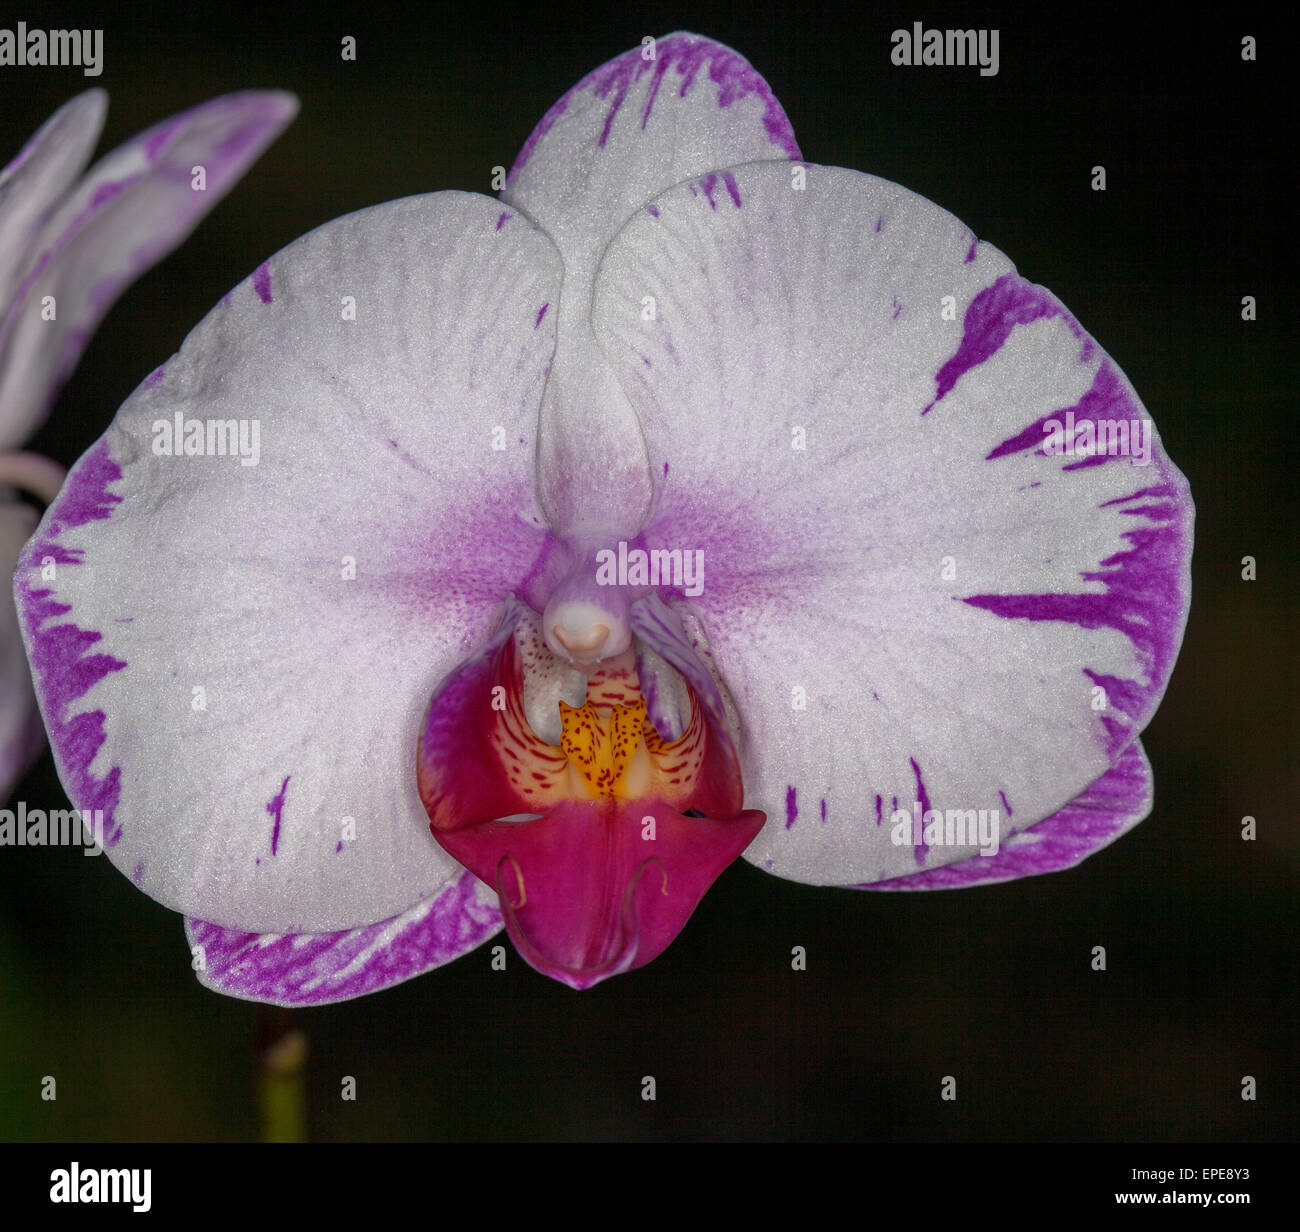 Doritaenopsis 'Lightning' Mutation, weiße Orchidee Blume mit Spritzern von Magenta / lila auf dunklem Hintergrund Stockfoto